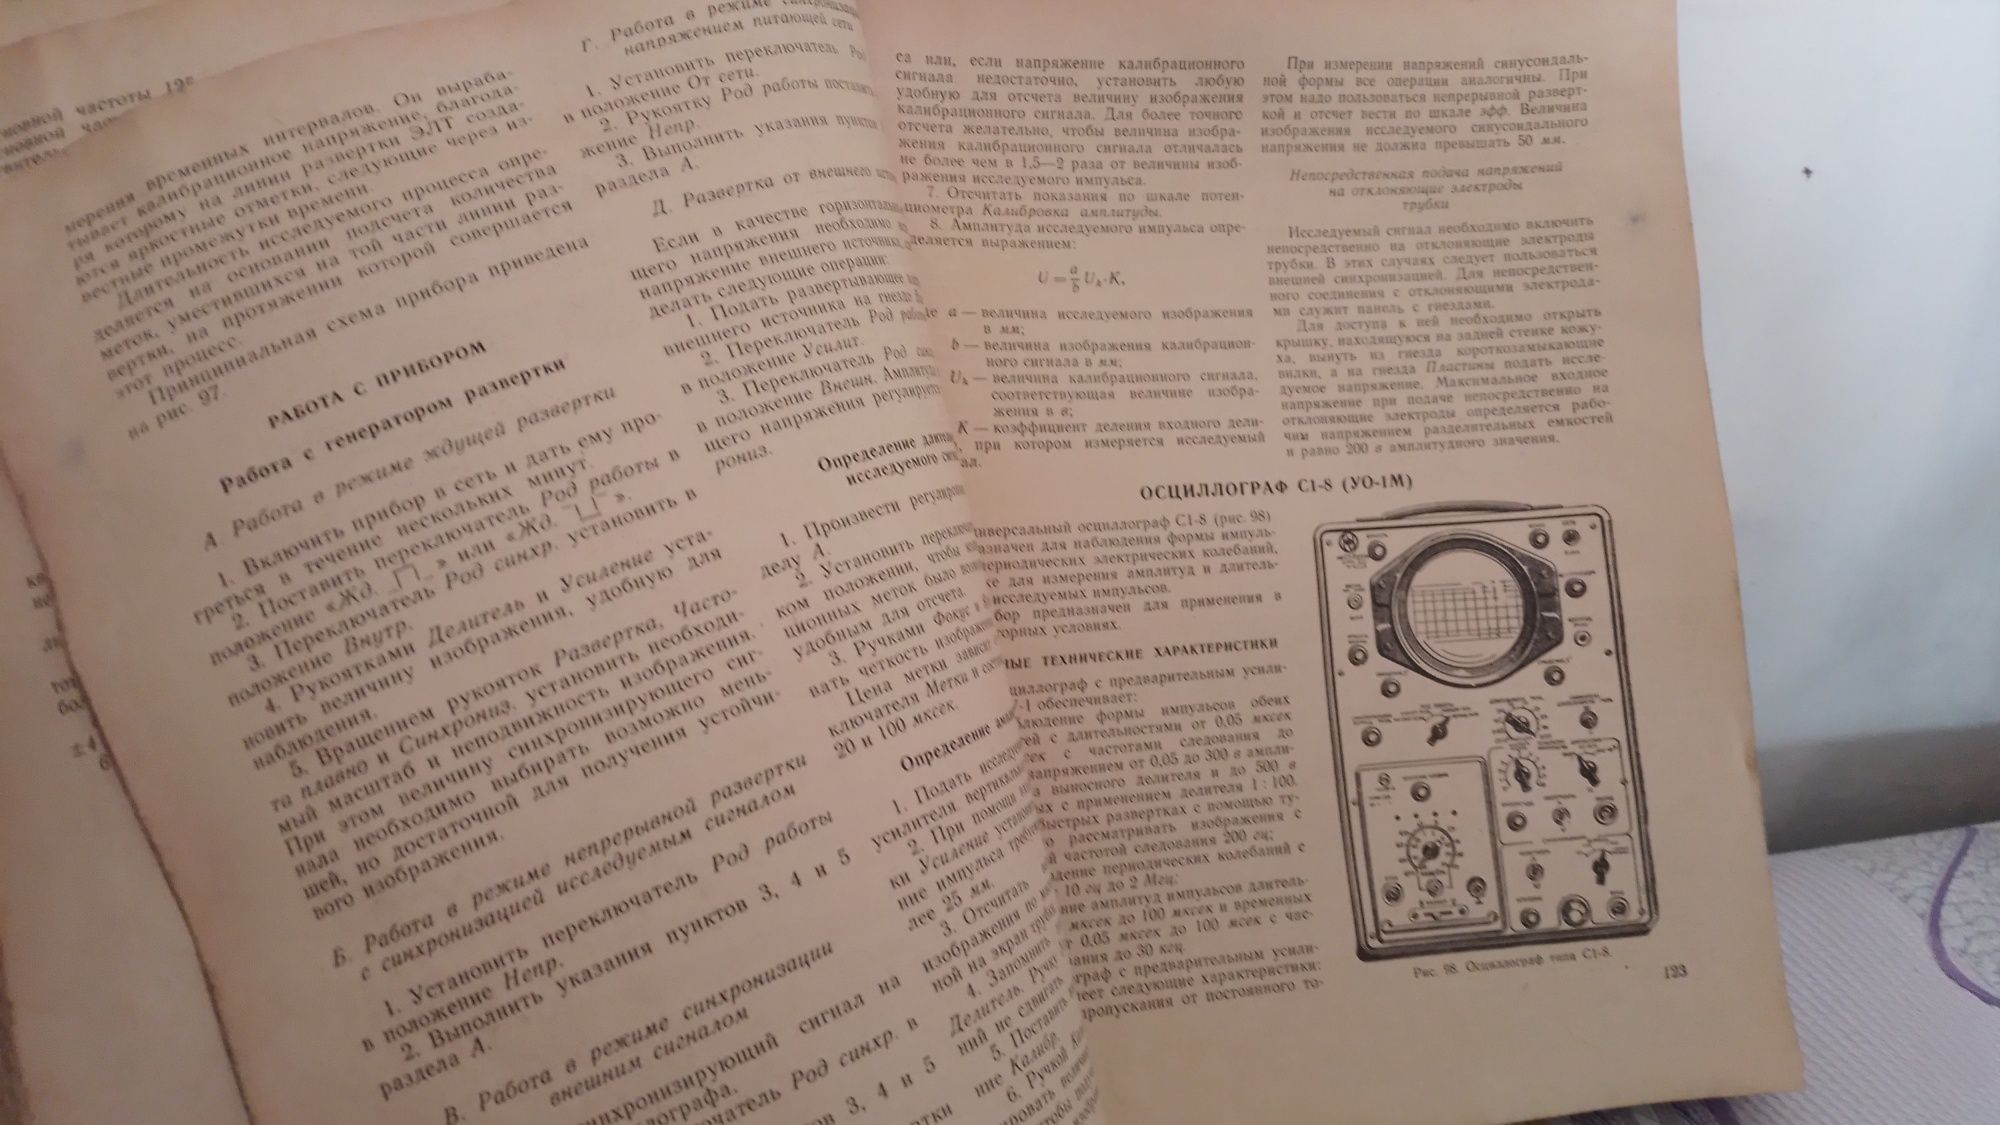 Справочник ссср 1966 года по радио измерительной апаратуре